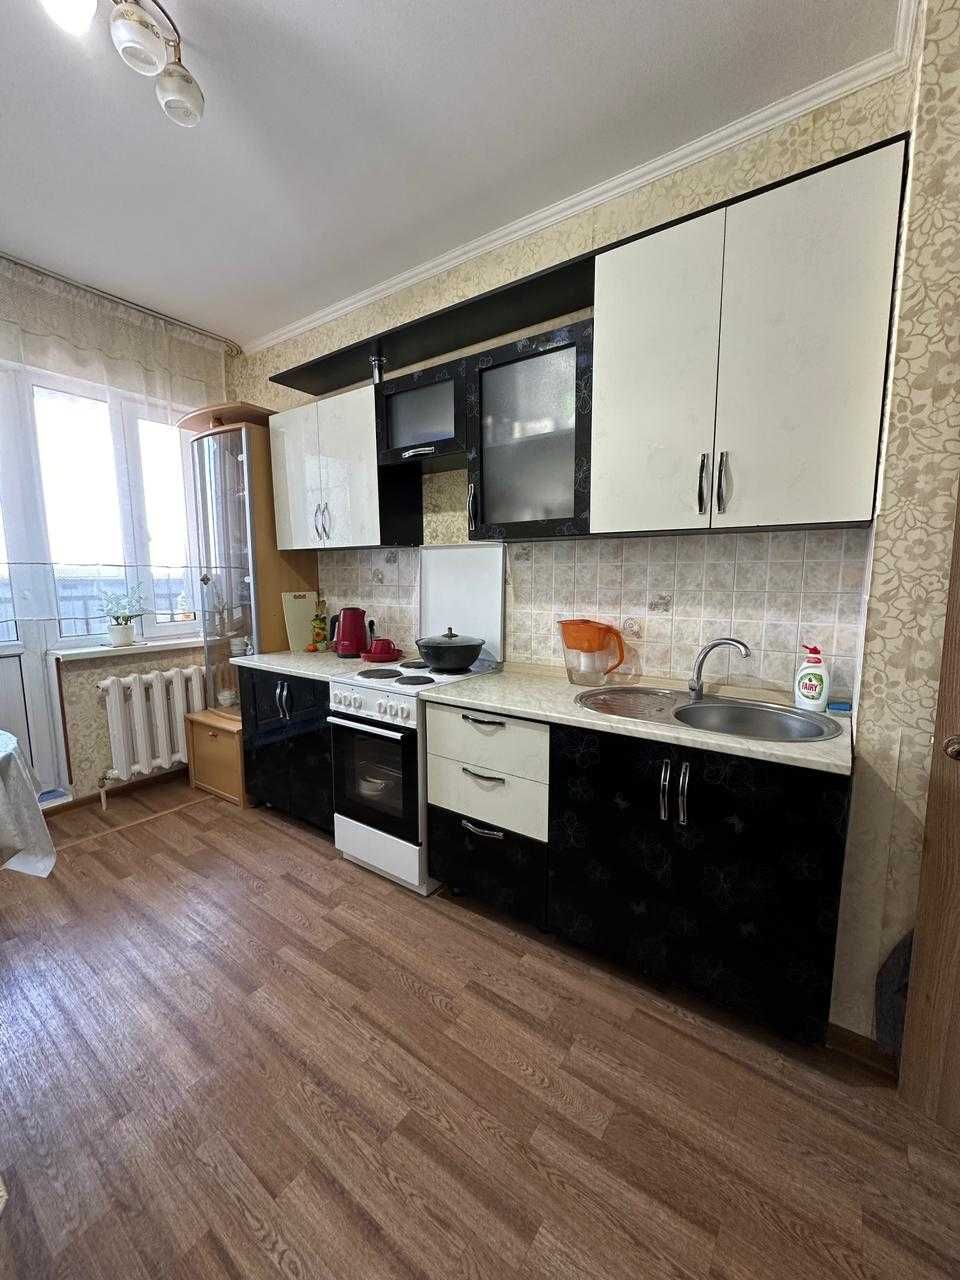 Продам 1-комнатную квартиру в центре Алматинского района